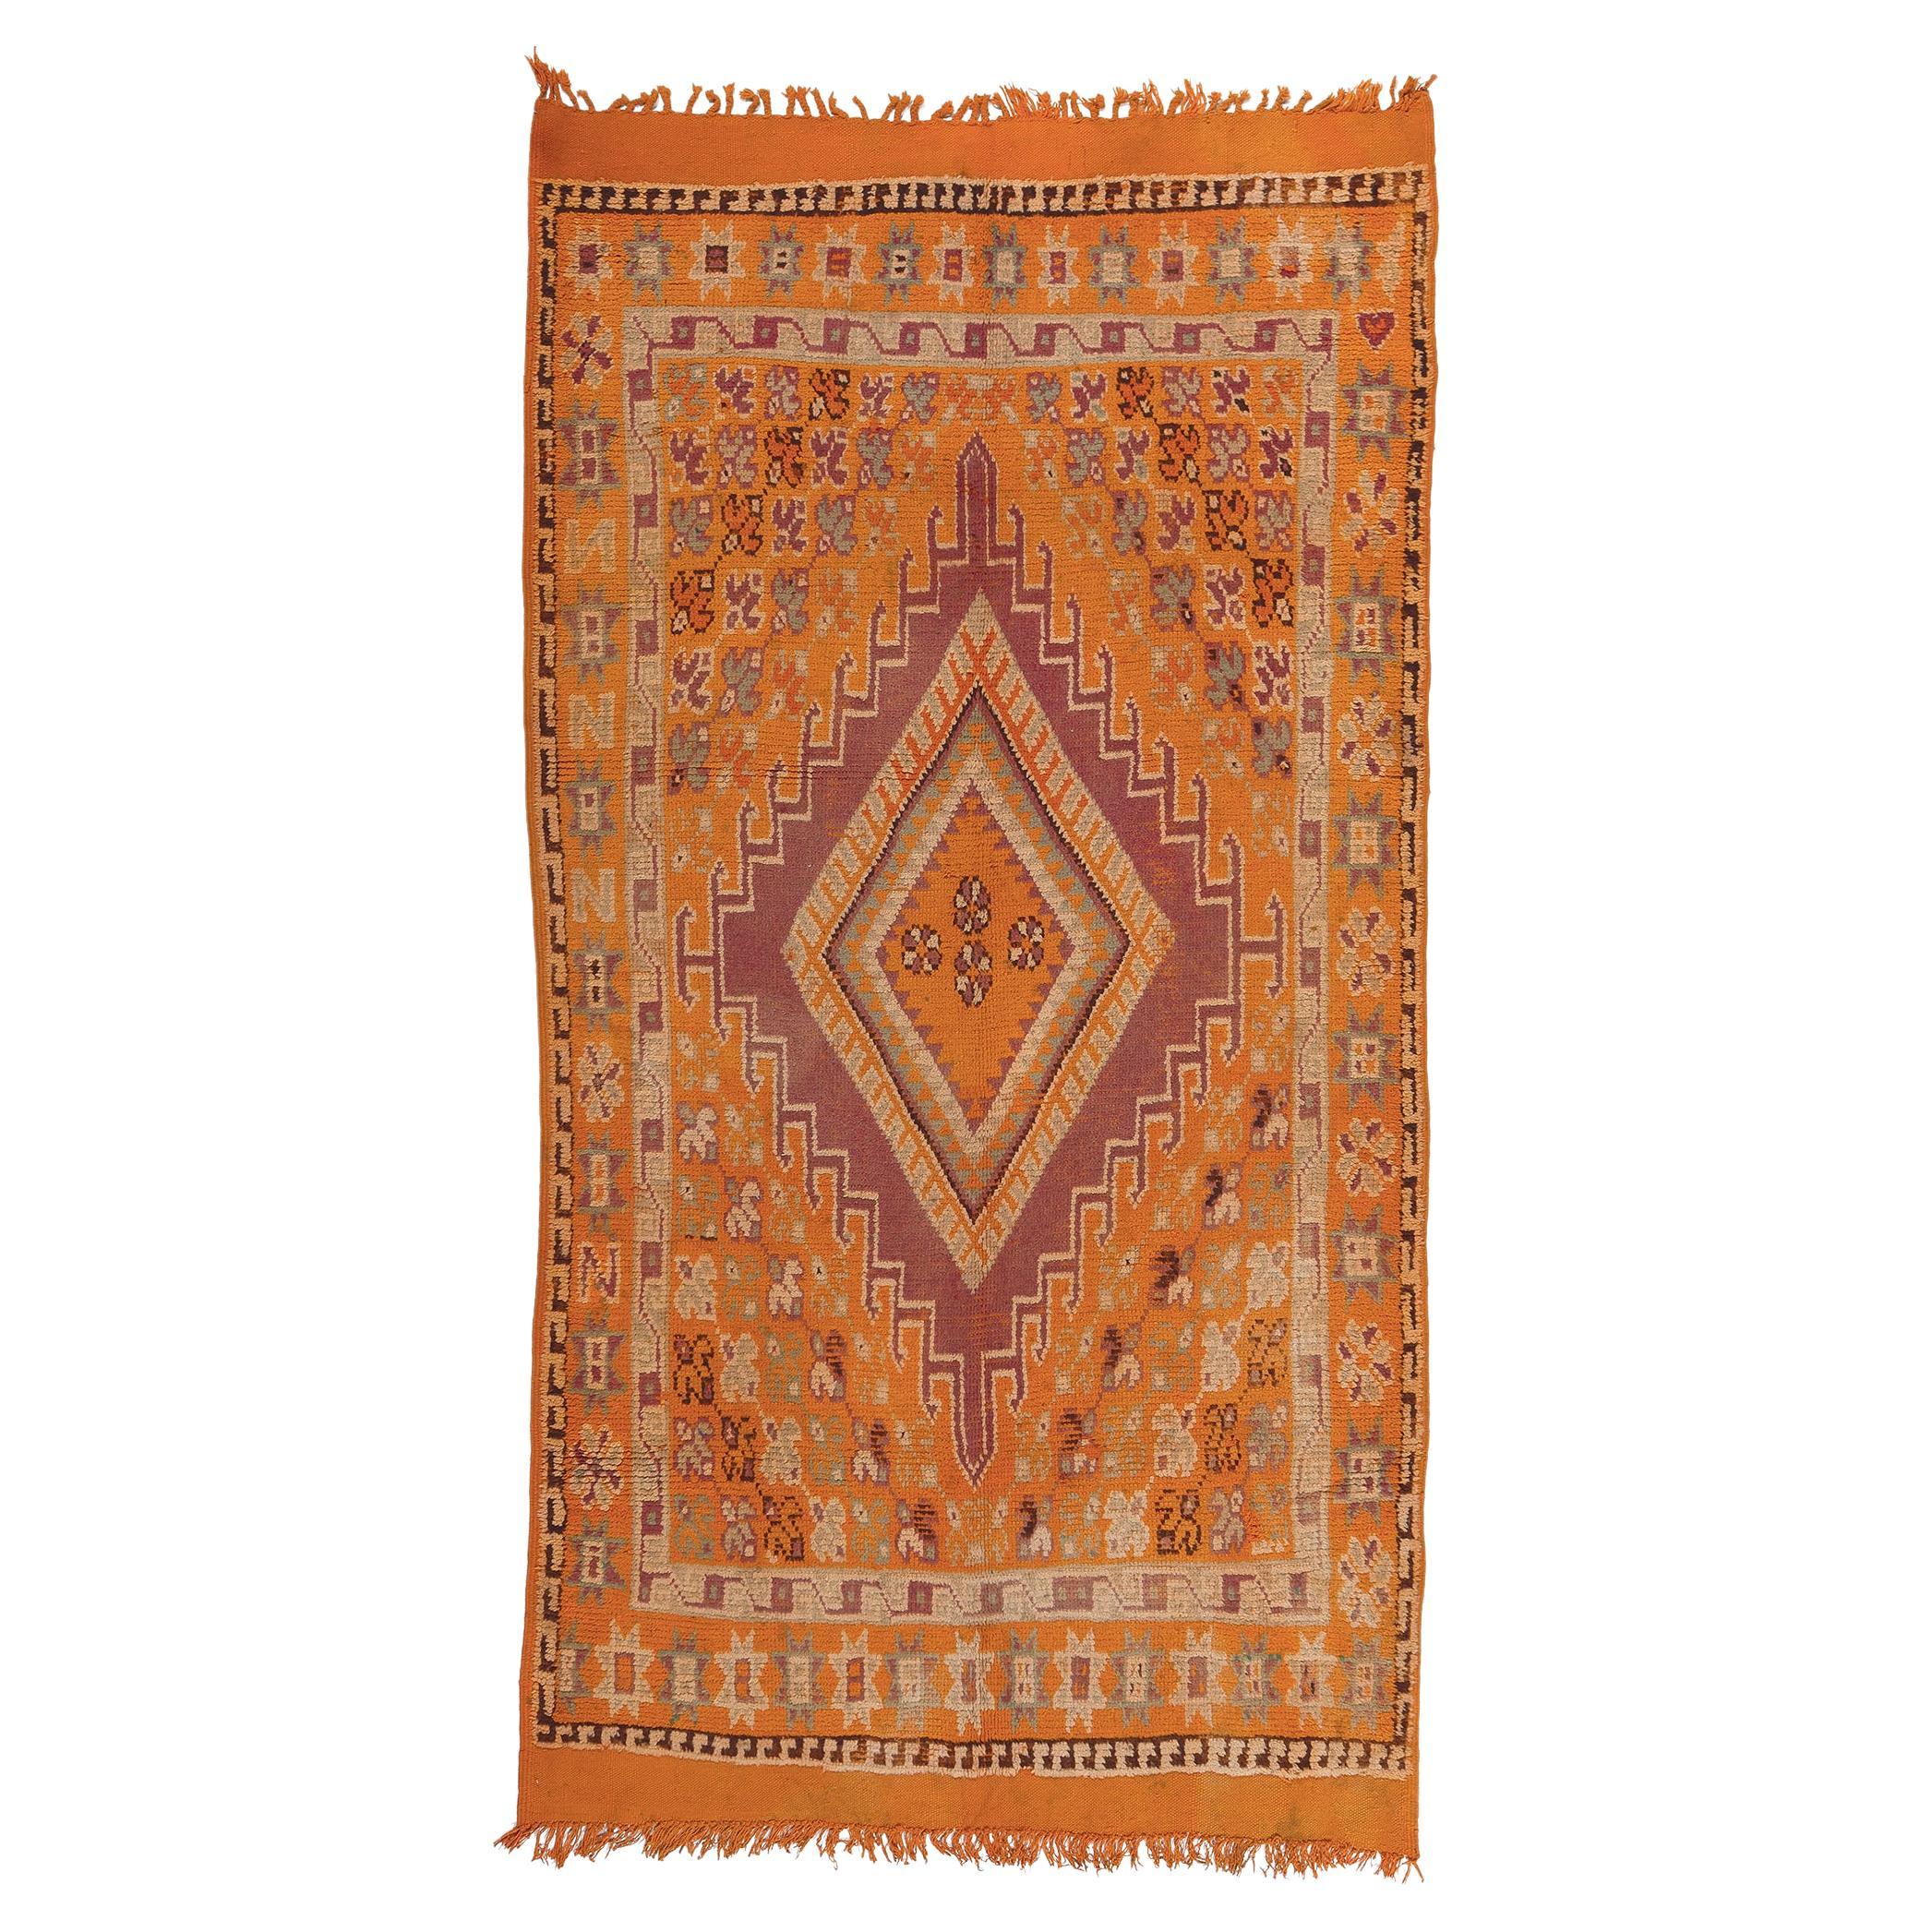 Tapis marocain orange, enchantement tribal rencontre le style bohème audacieux en vente